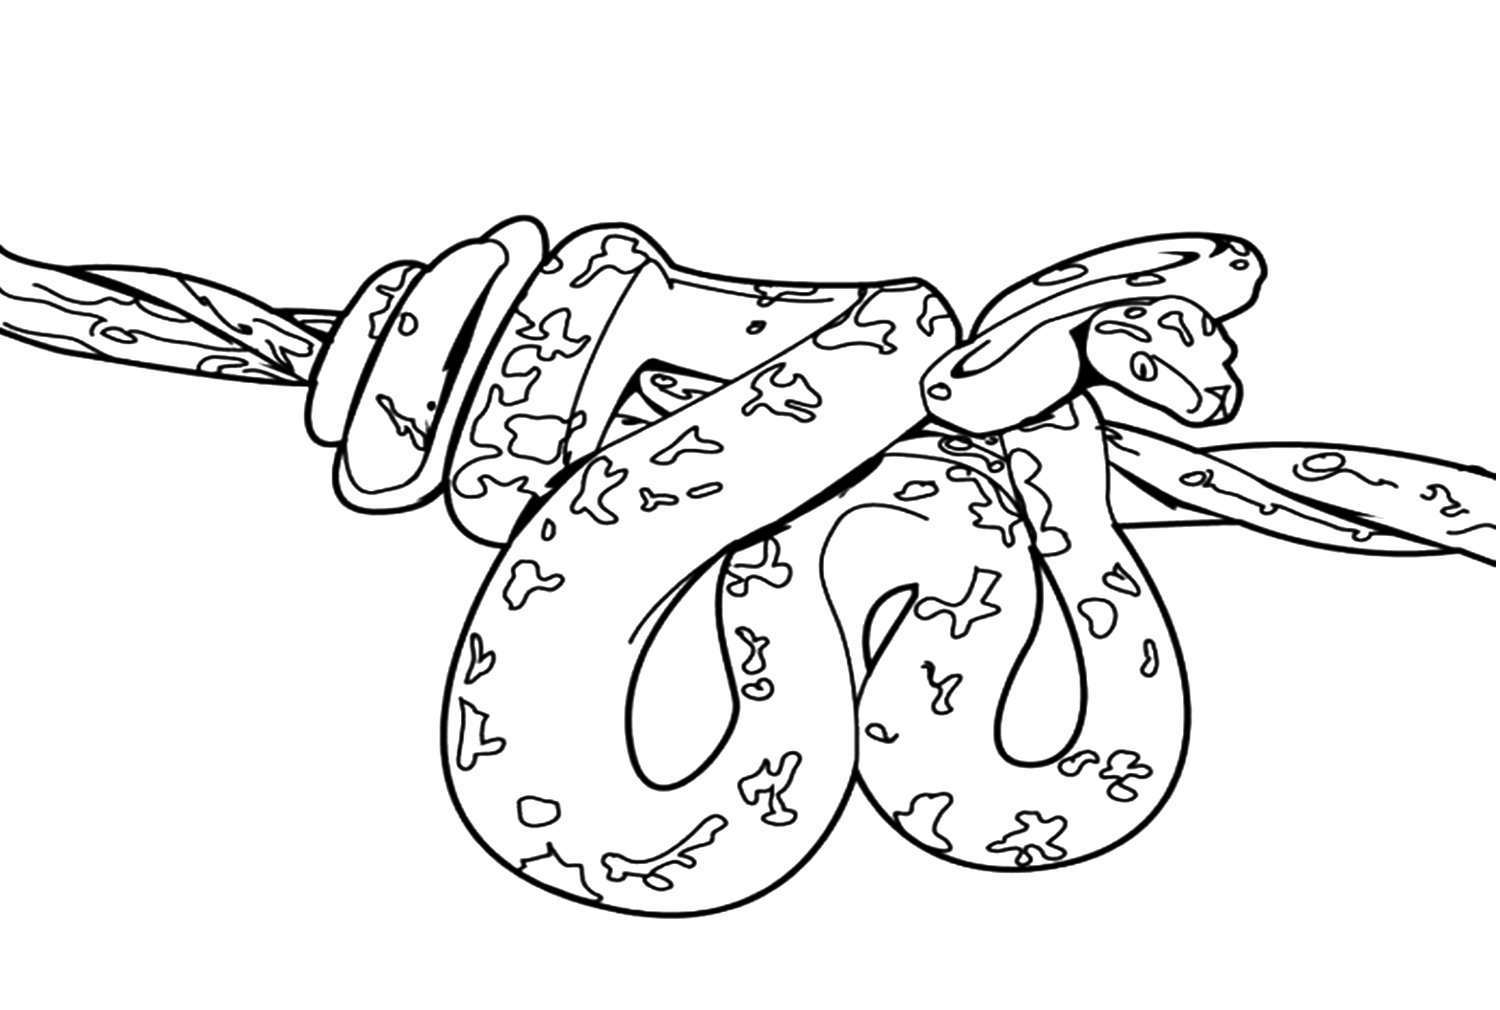 Раскраски змей распечатать. Змея раскраска. Раскраски змей. Змея раскраска для детей. Раскраска змеи для детей.